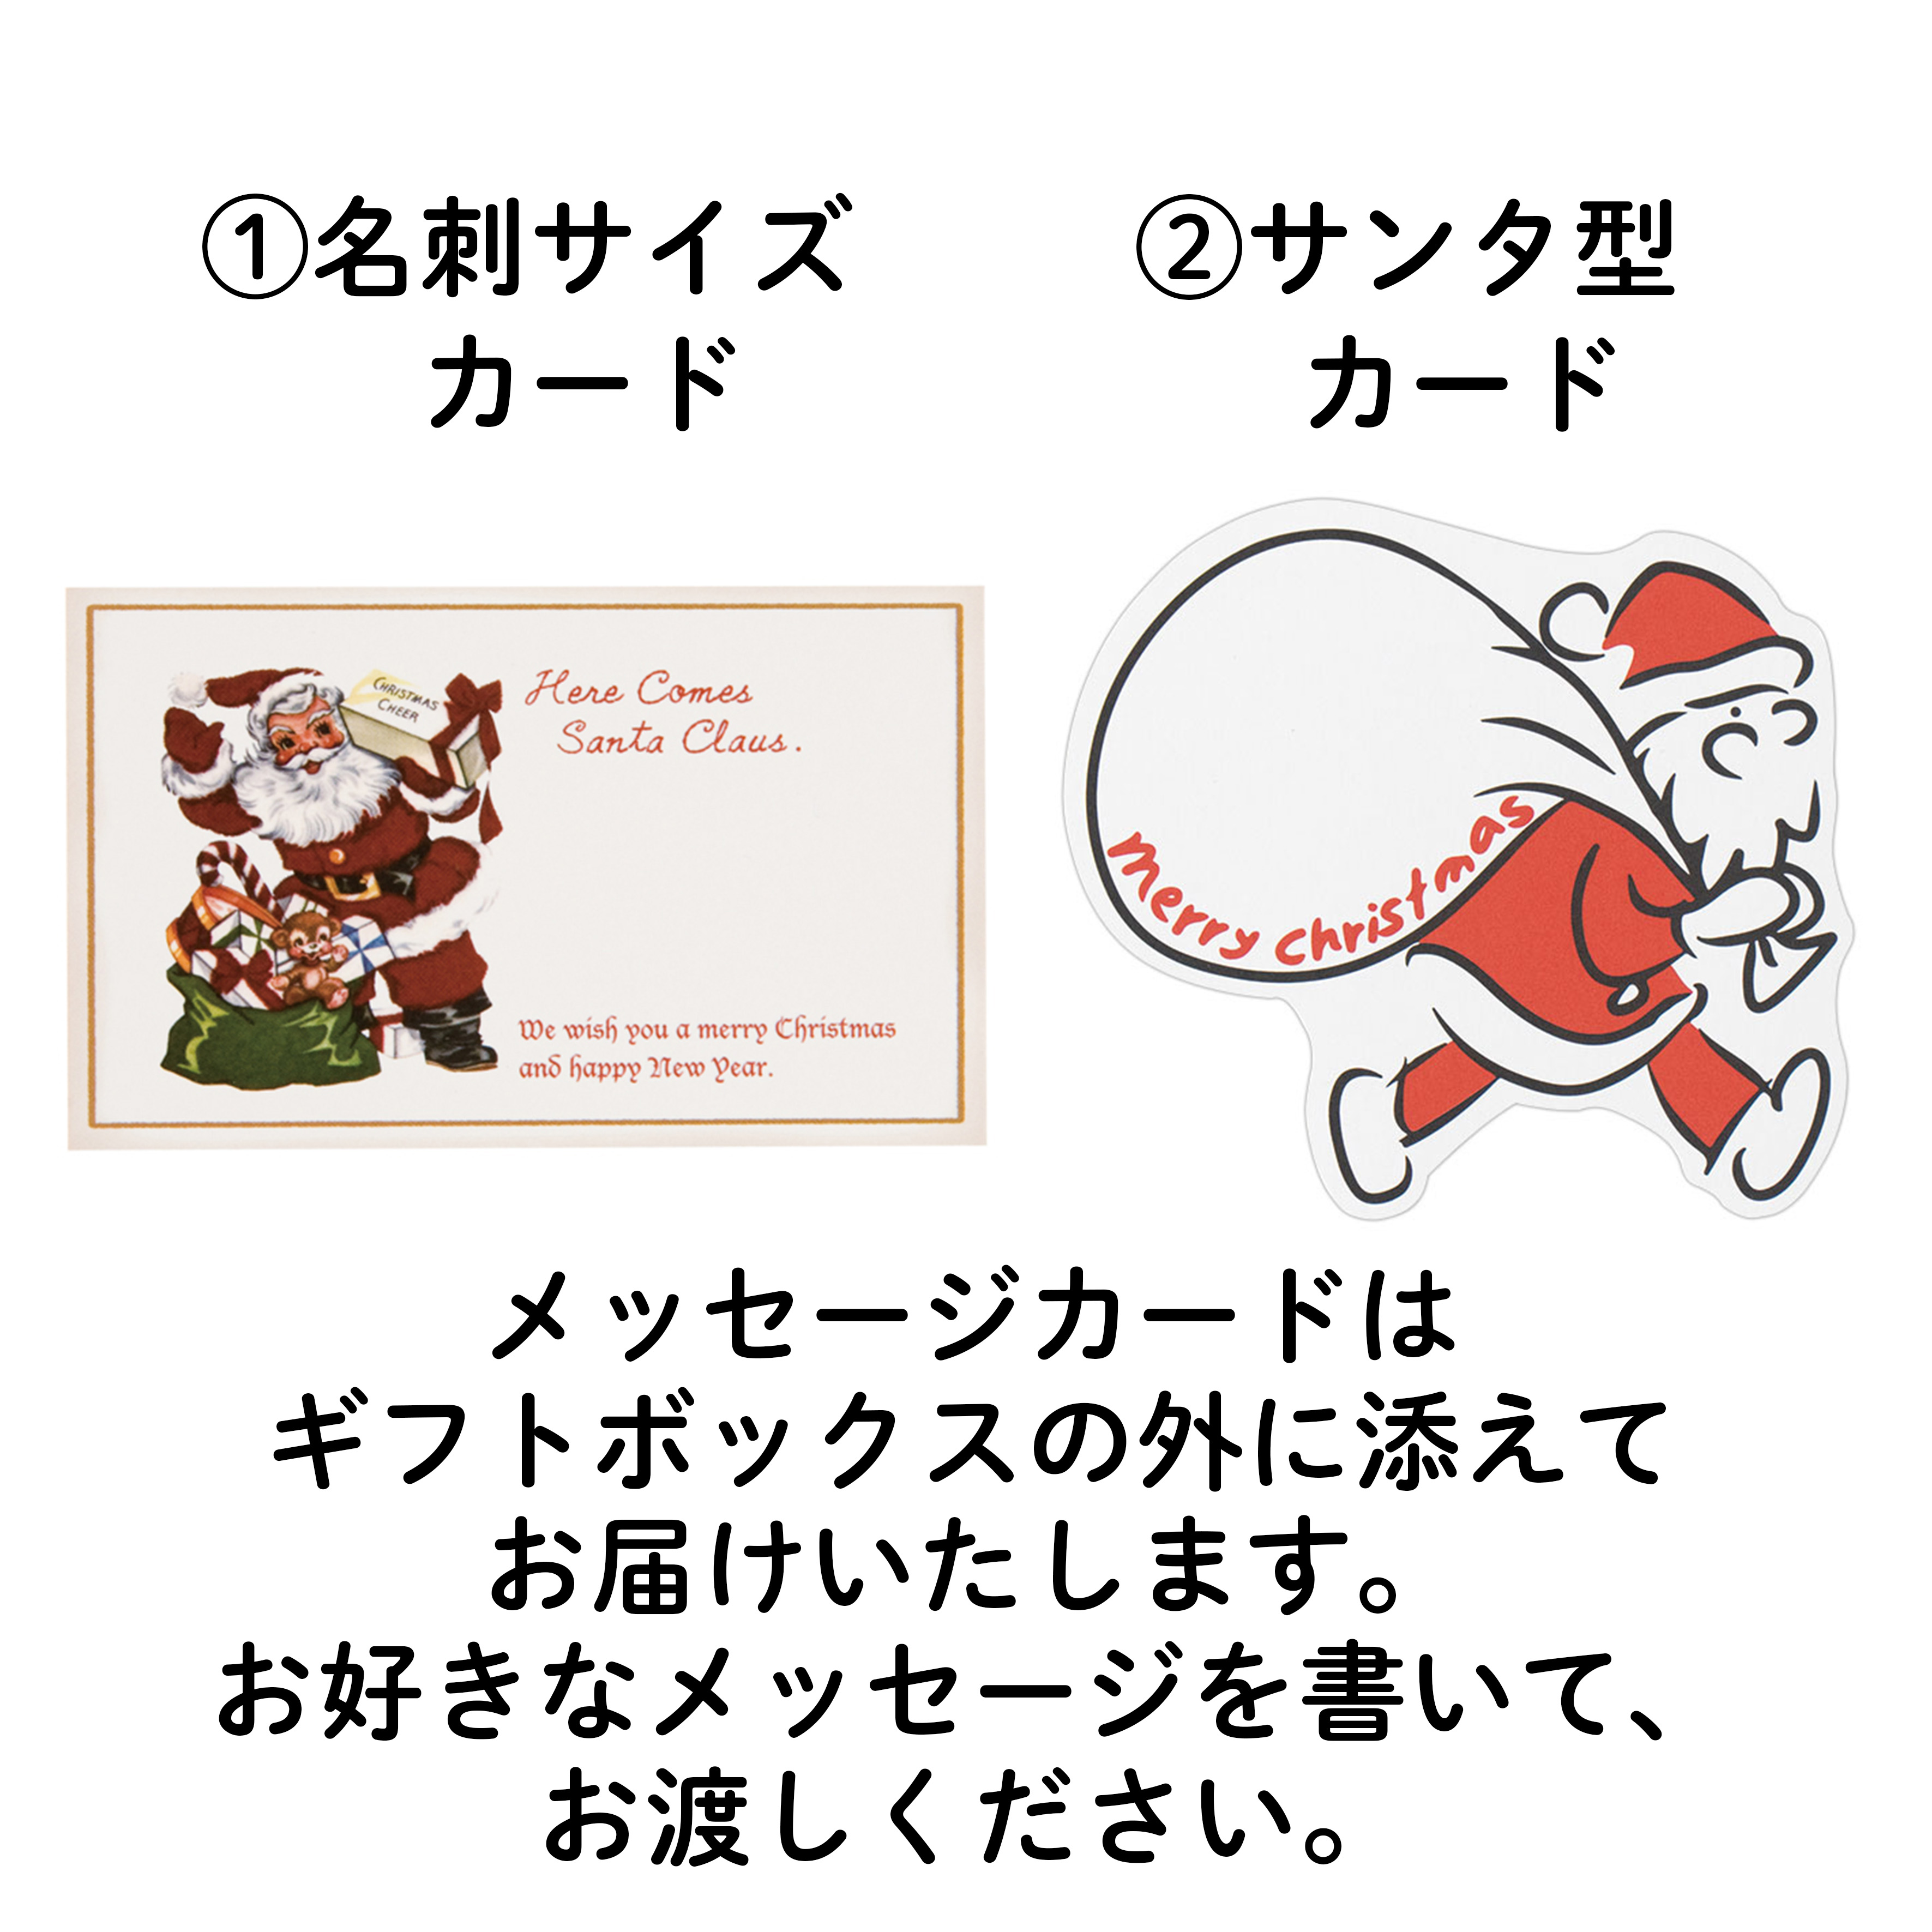 【クリスマス】飾りパンオーナメント